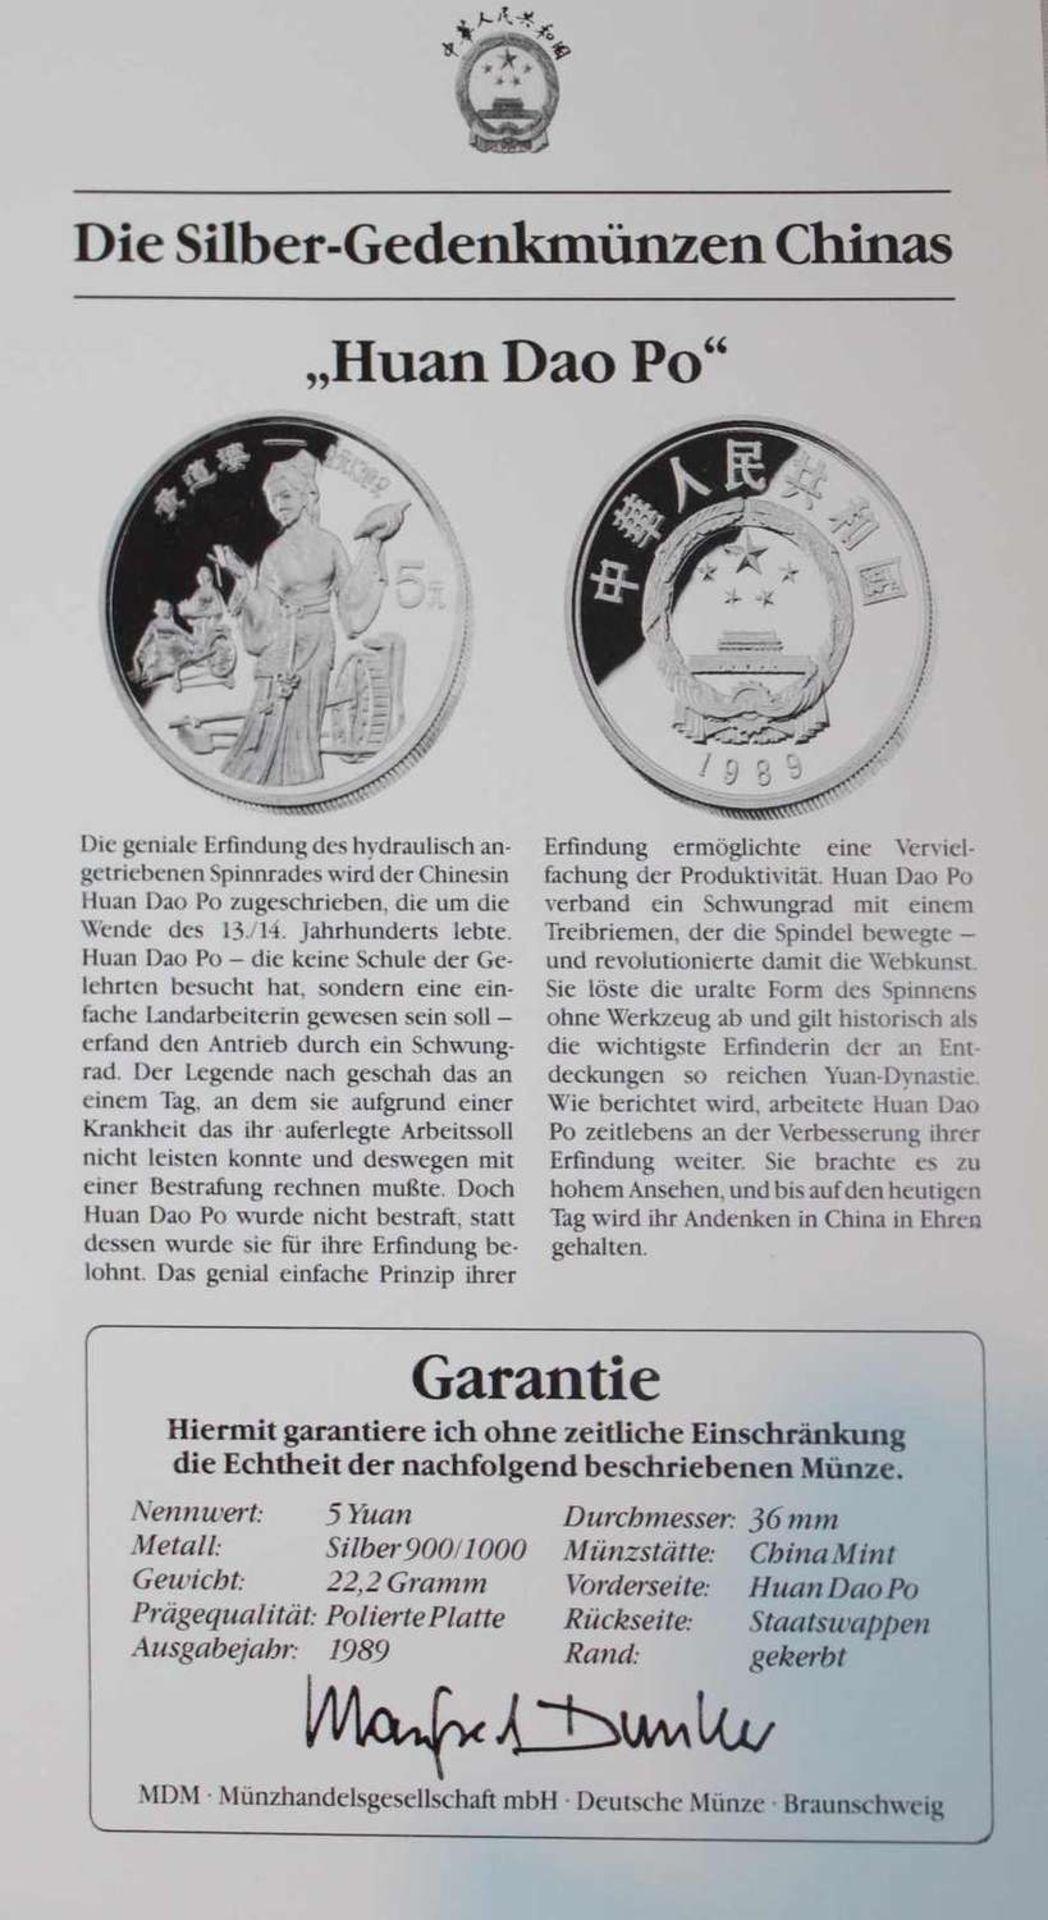 China 1989, 5 Yuan - Silbermünze "Huan Dao Po". Silber 900. Gewicht: 22,2 gr.. In Kapsel. Erhaltung: - Image 3 of 3